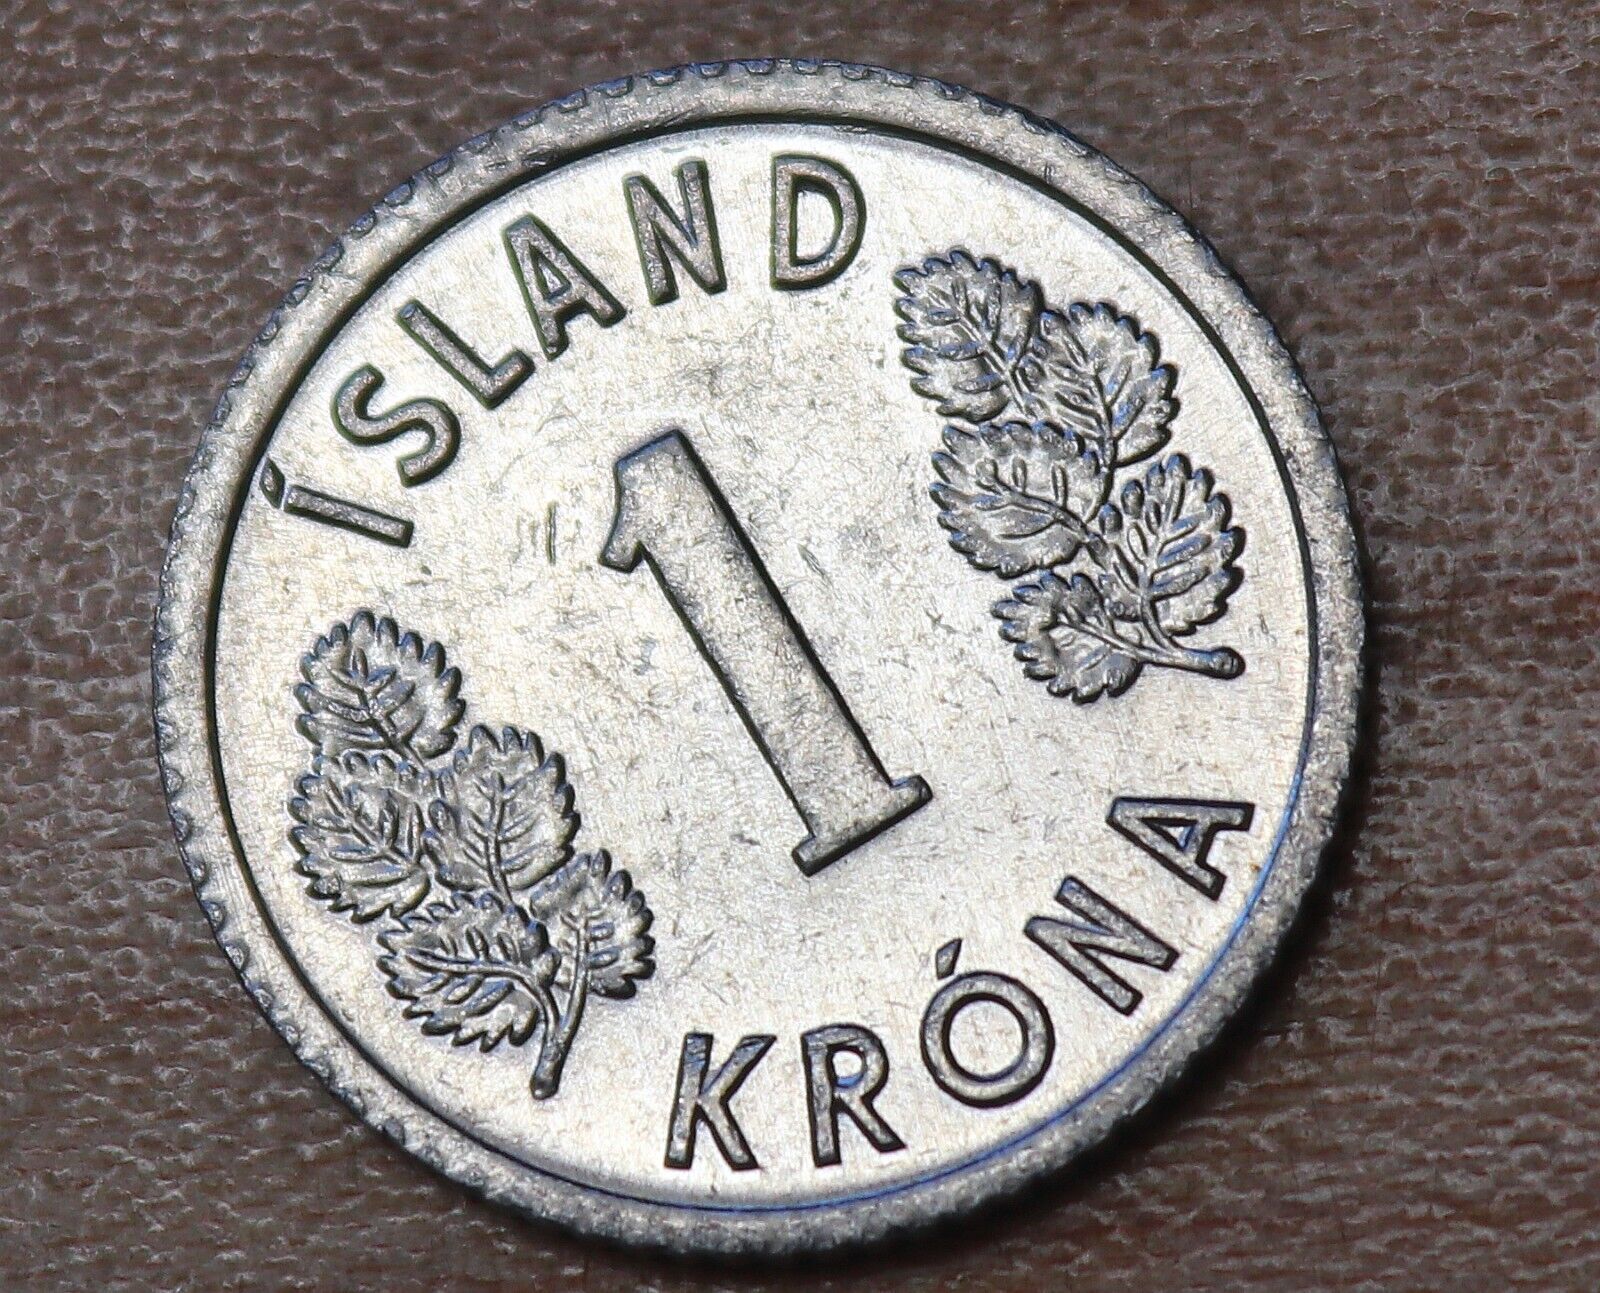 1977 Iceland 1 Krona